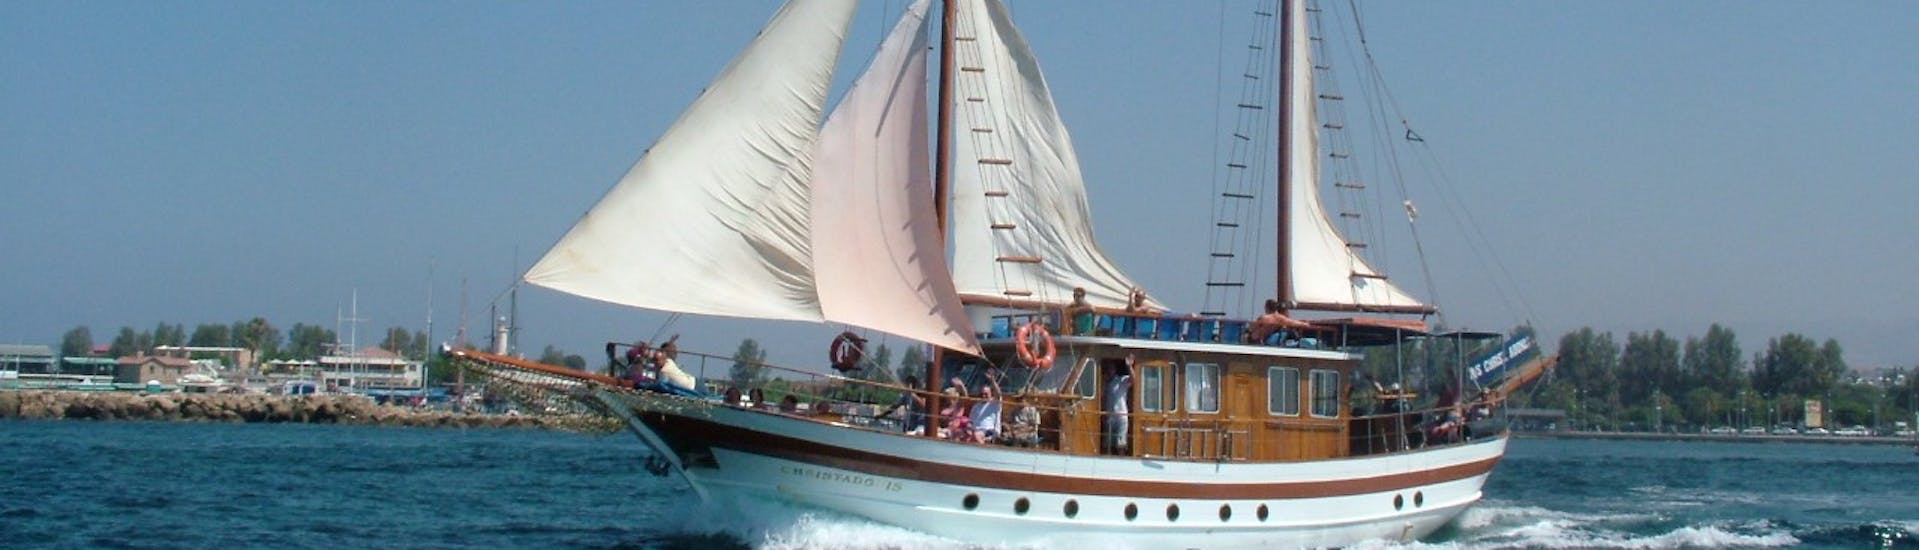 Foto del Paseo en velero desde Pafos a la Bahía del Coral o Timi con Venus Sea Cruises.